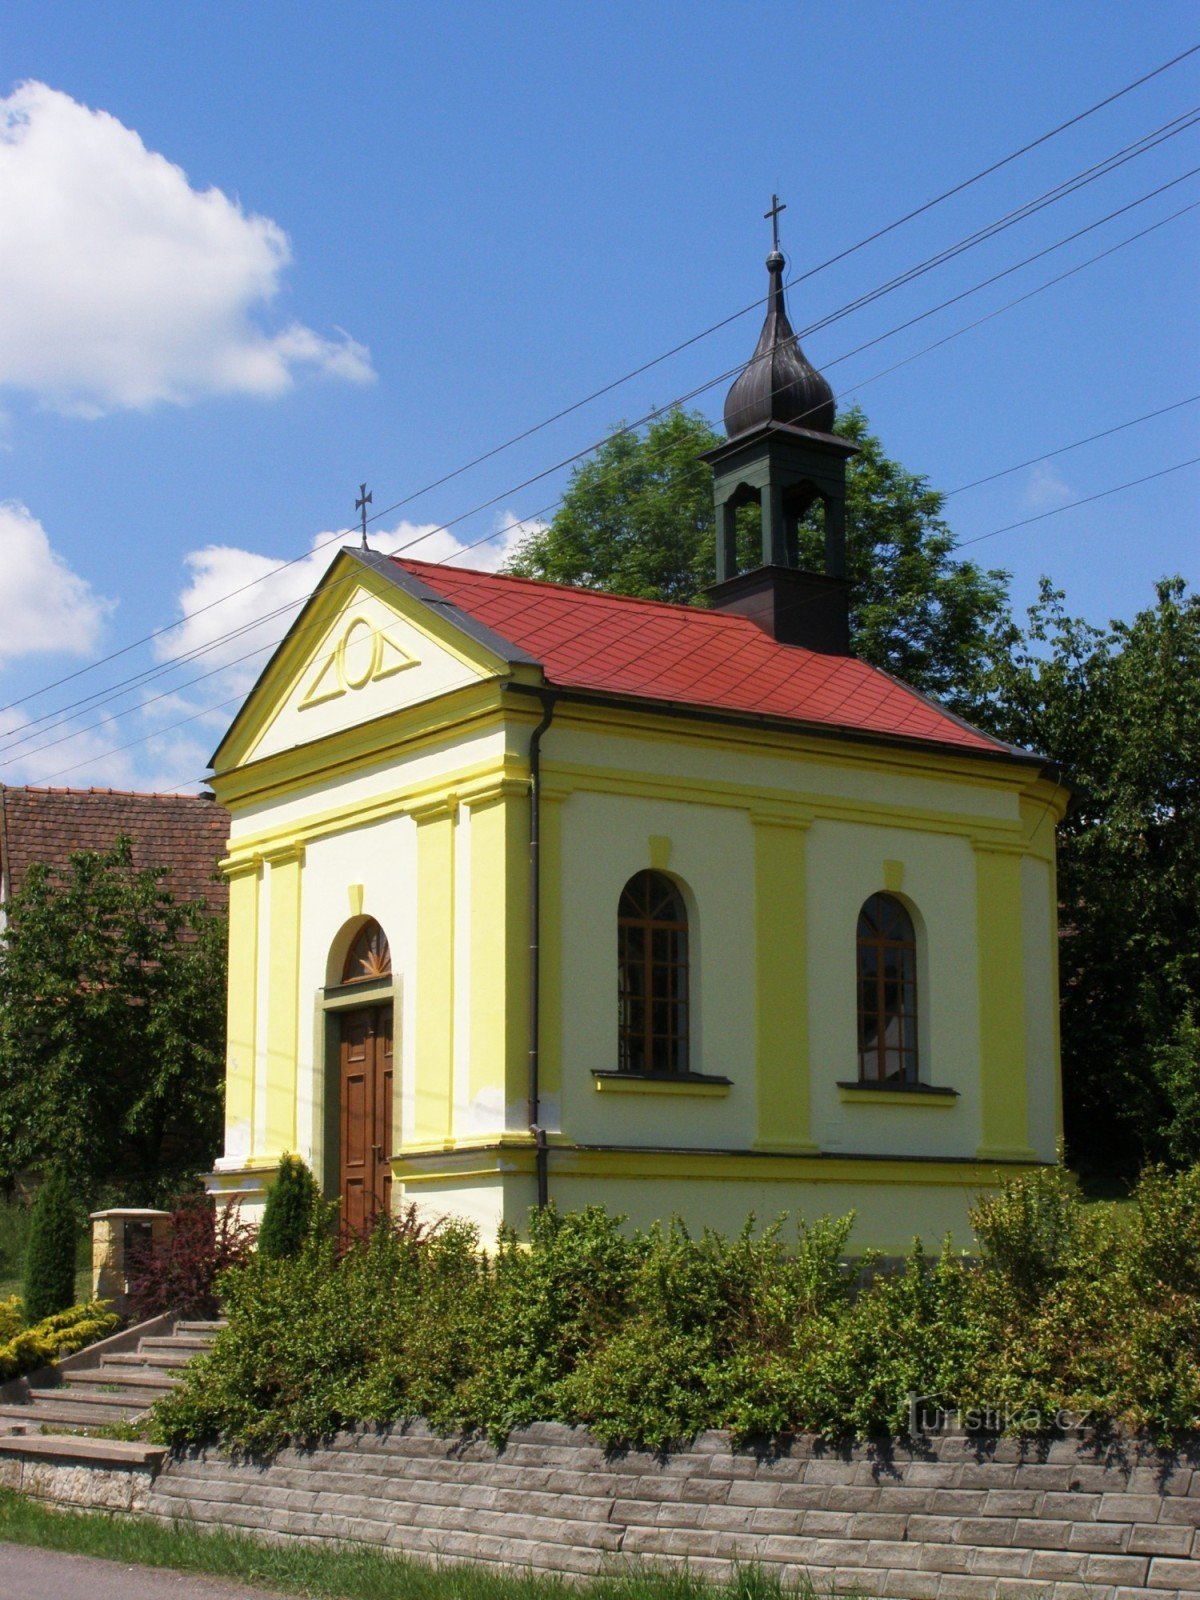 Slemeno - kaplica św. Józefa